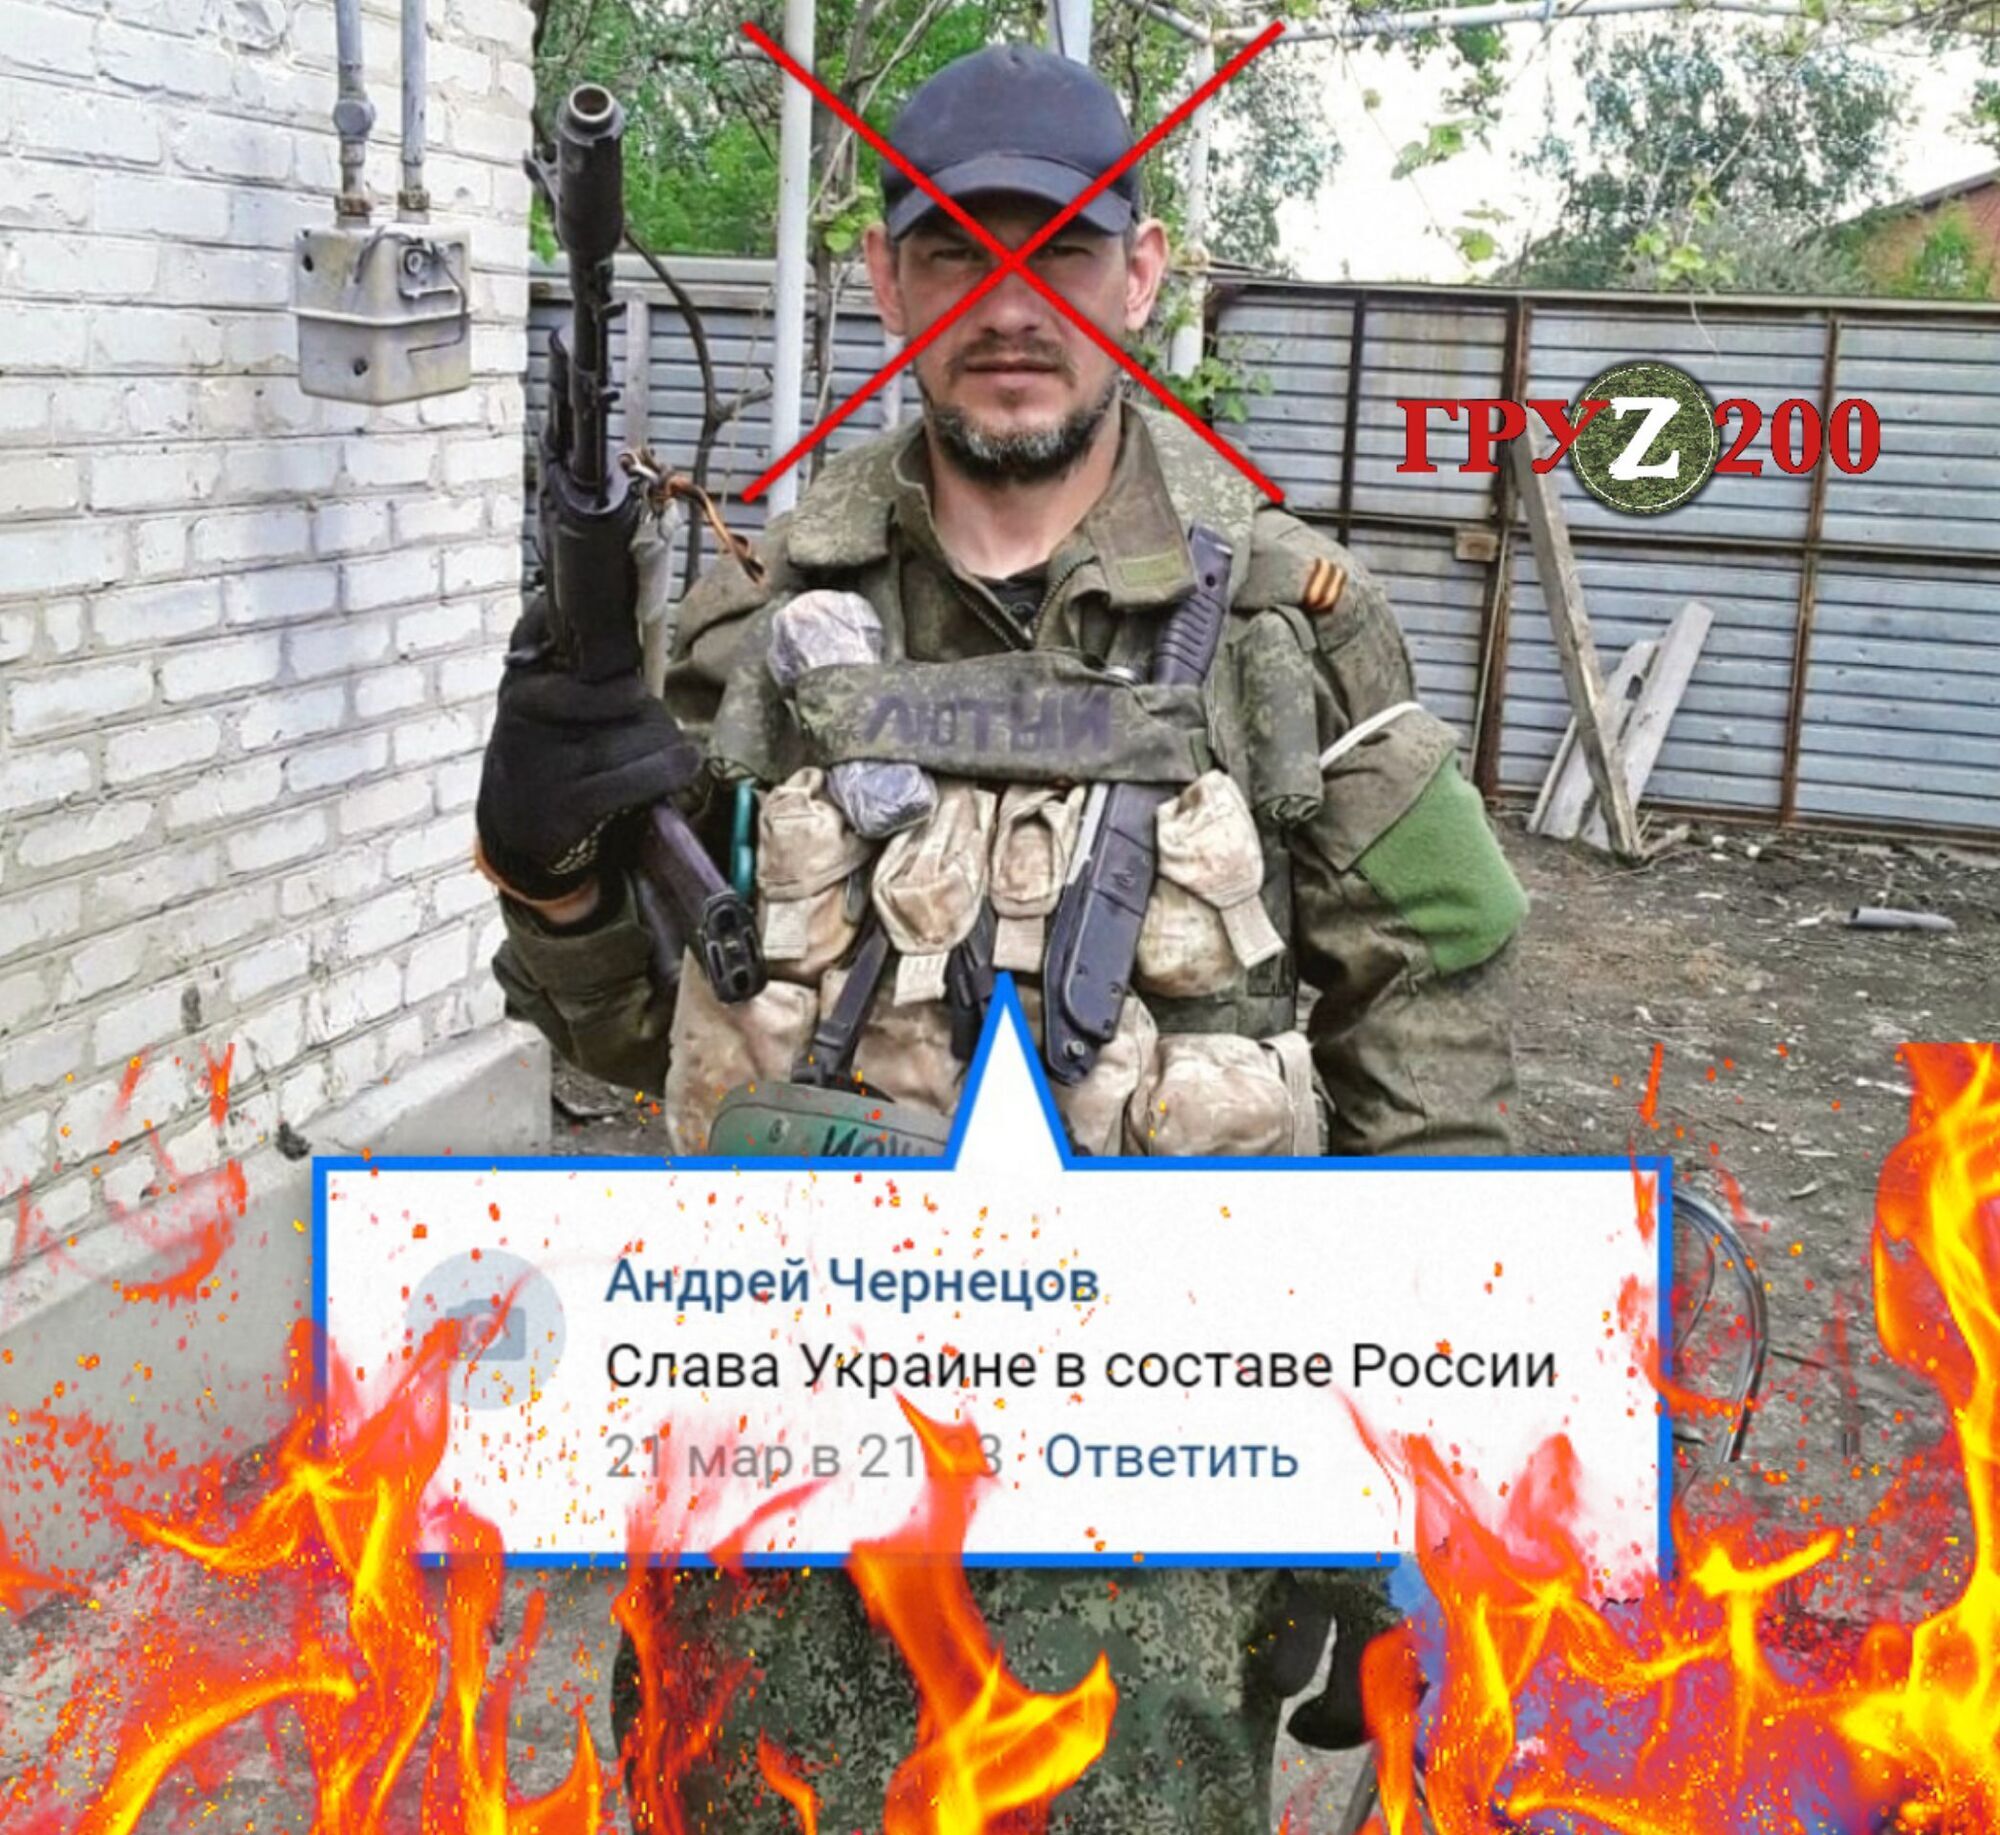 ВСУ ликвидировали оккупанта, мечтавшего об Украине в составе России